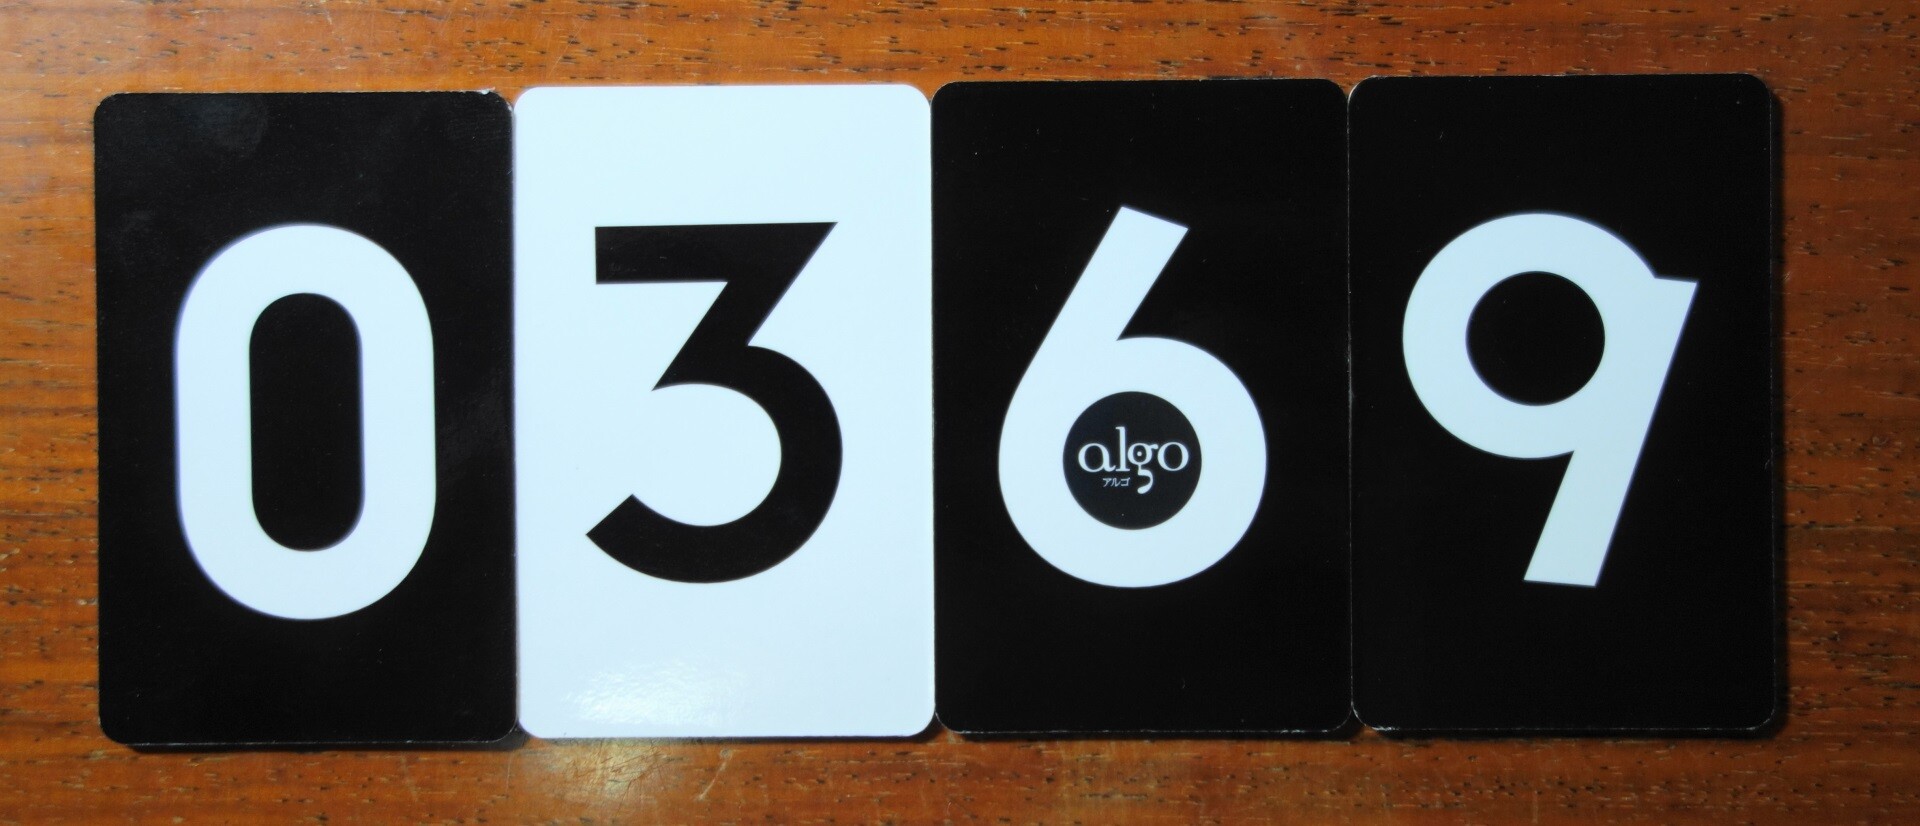 カードは左から小さい順に並べる